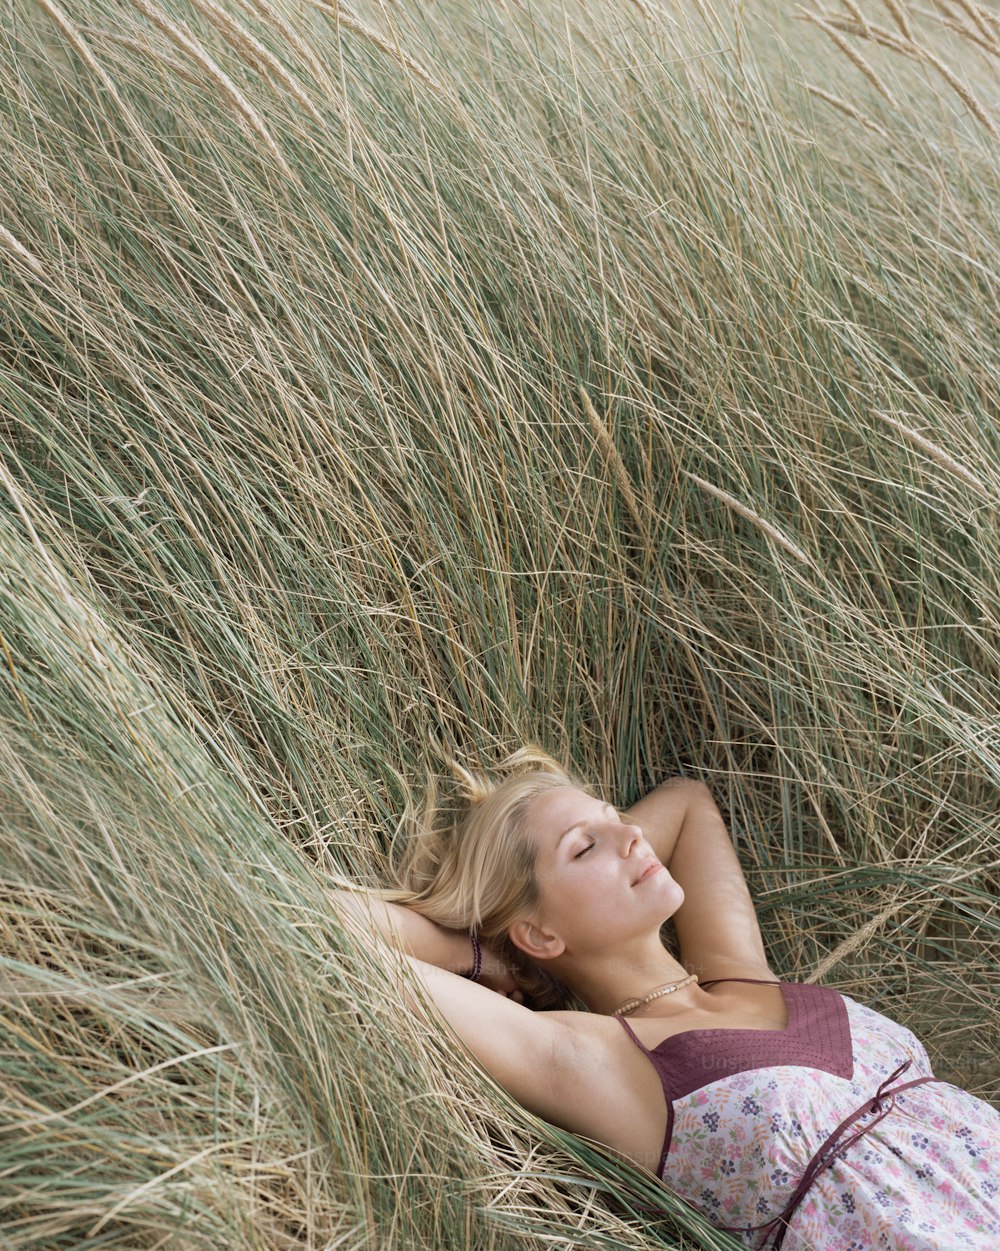 Une femme allongée dans un champ d’herbes hautes